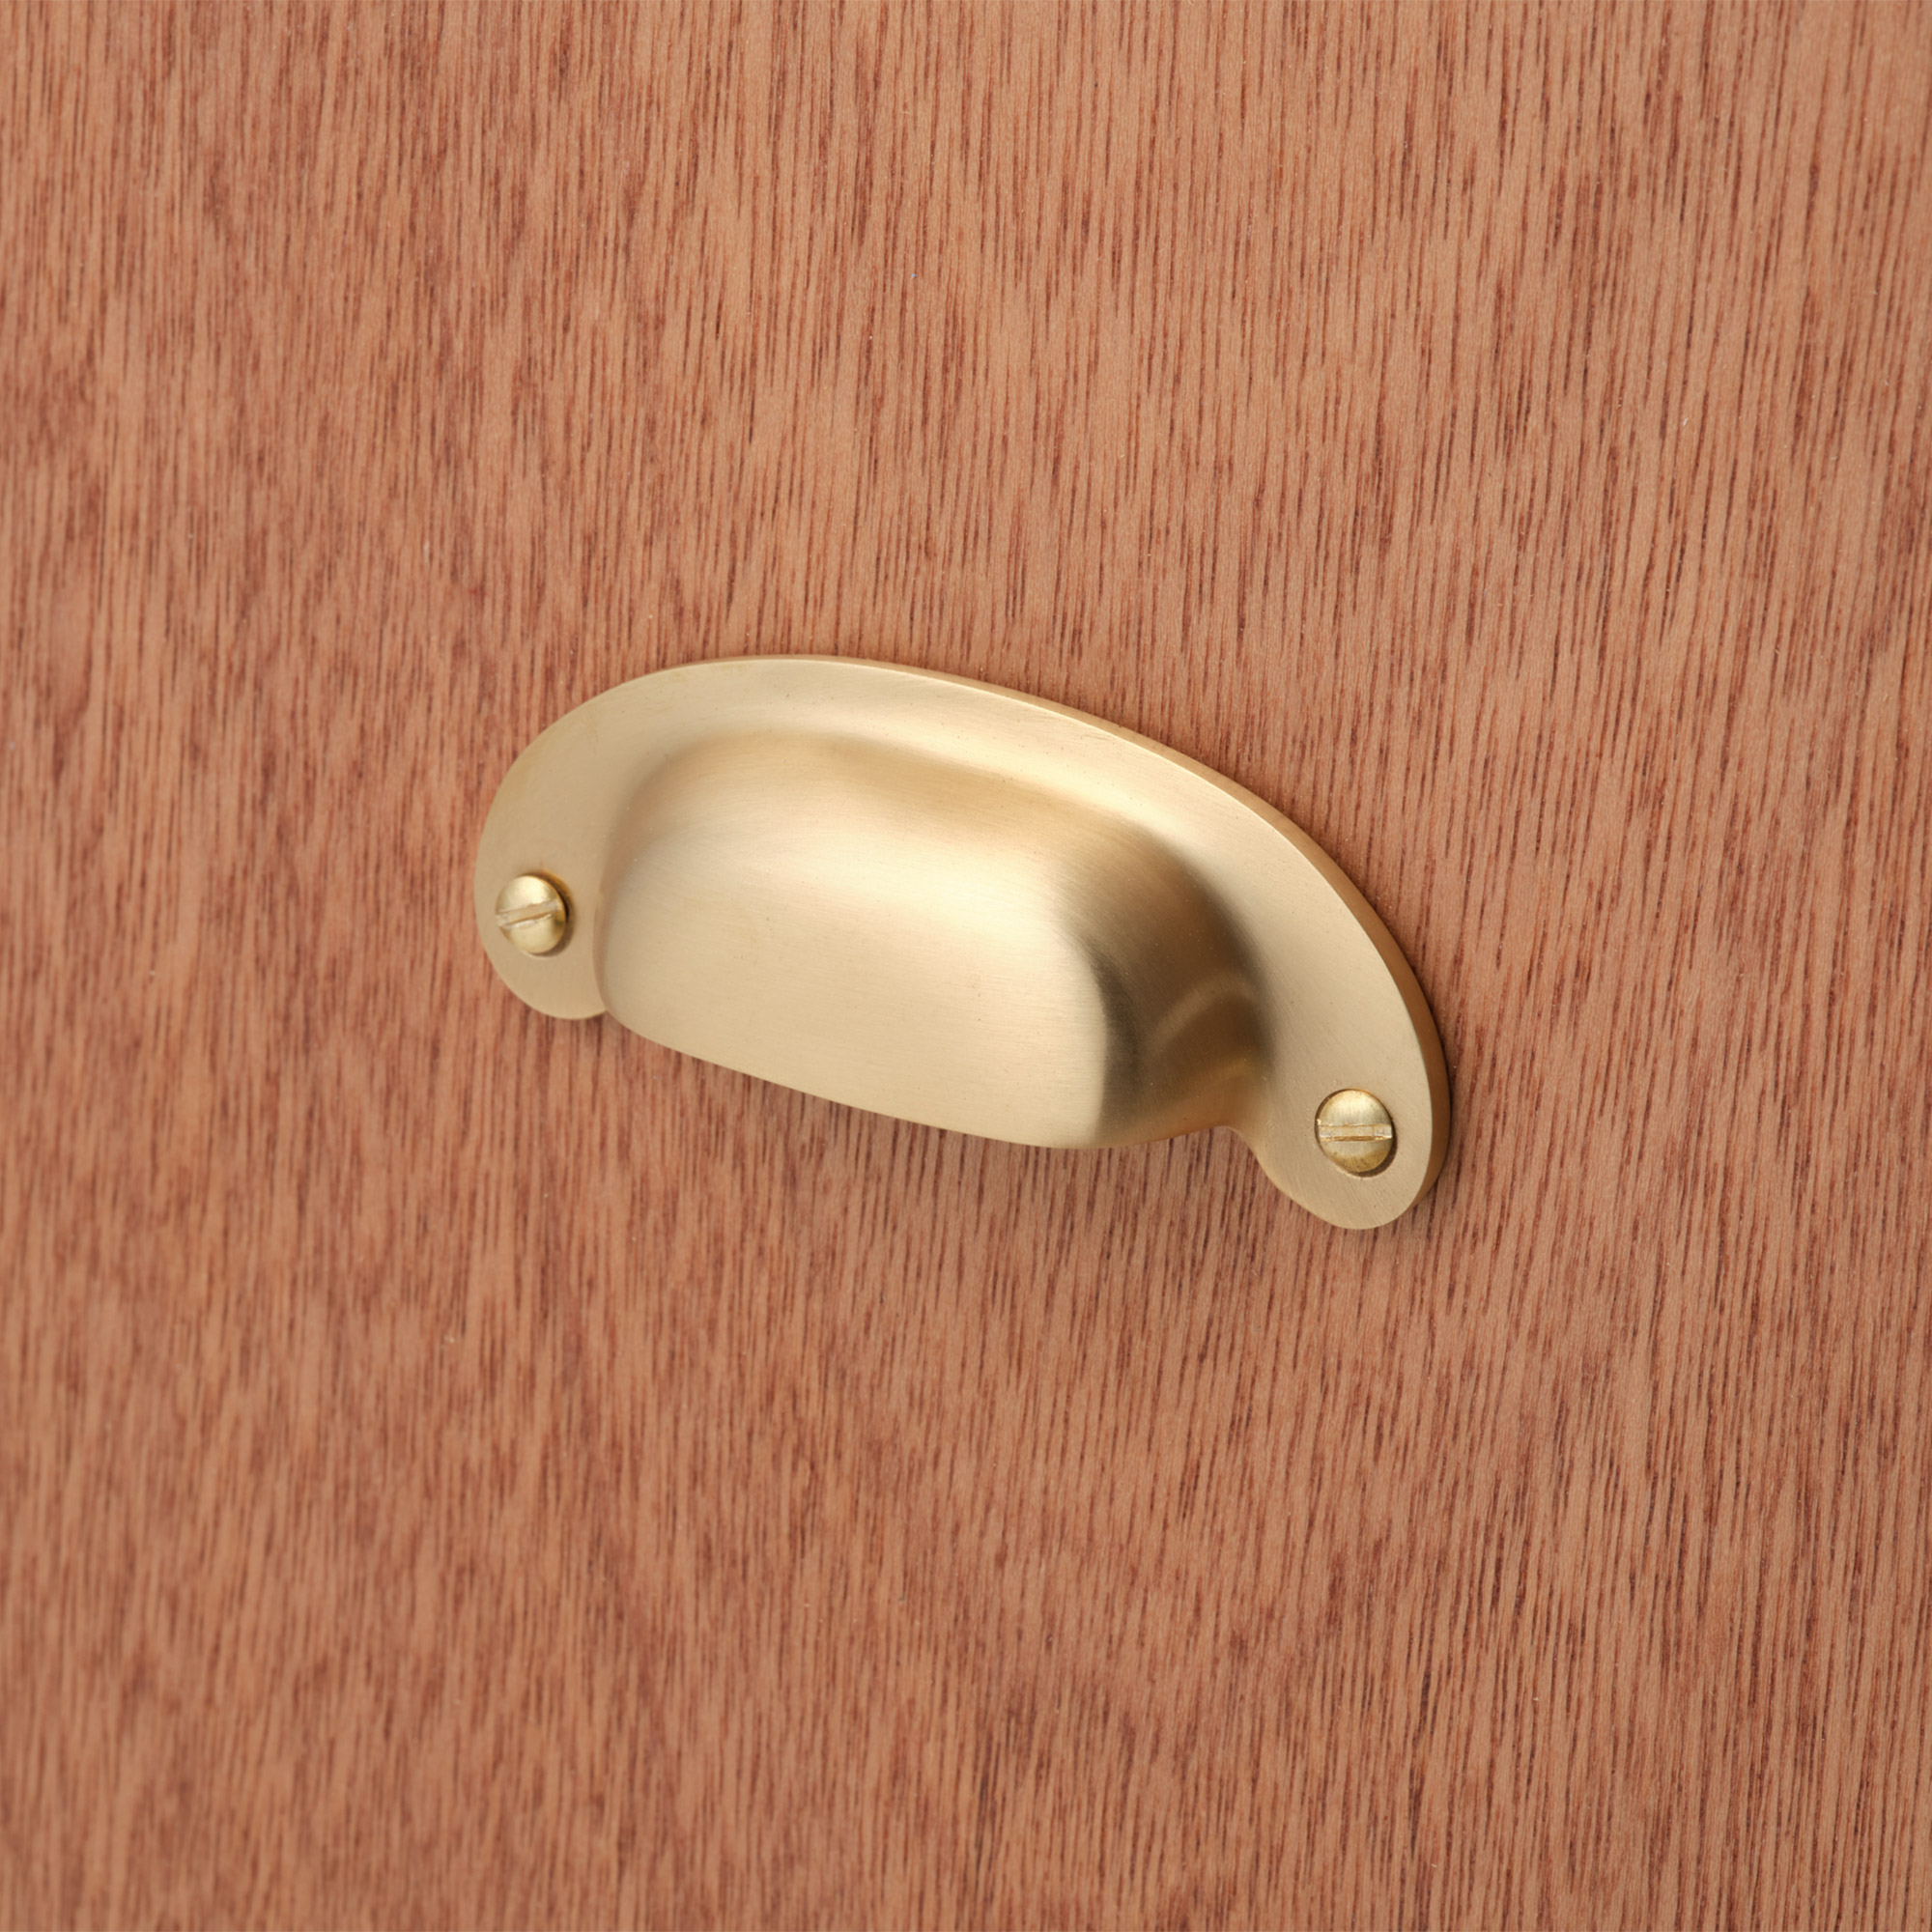 鋳物キッチン把手 ラウンドカップ 真鍮 PS-HD018-13-G141 ラワン材と合わせたイメージ